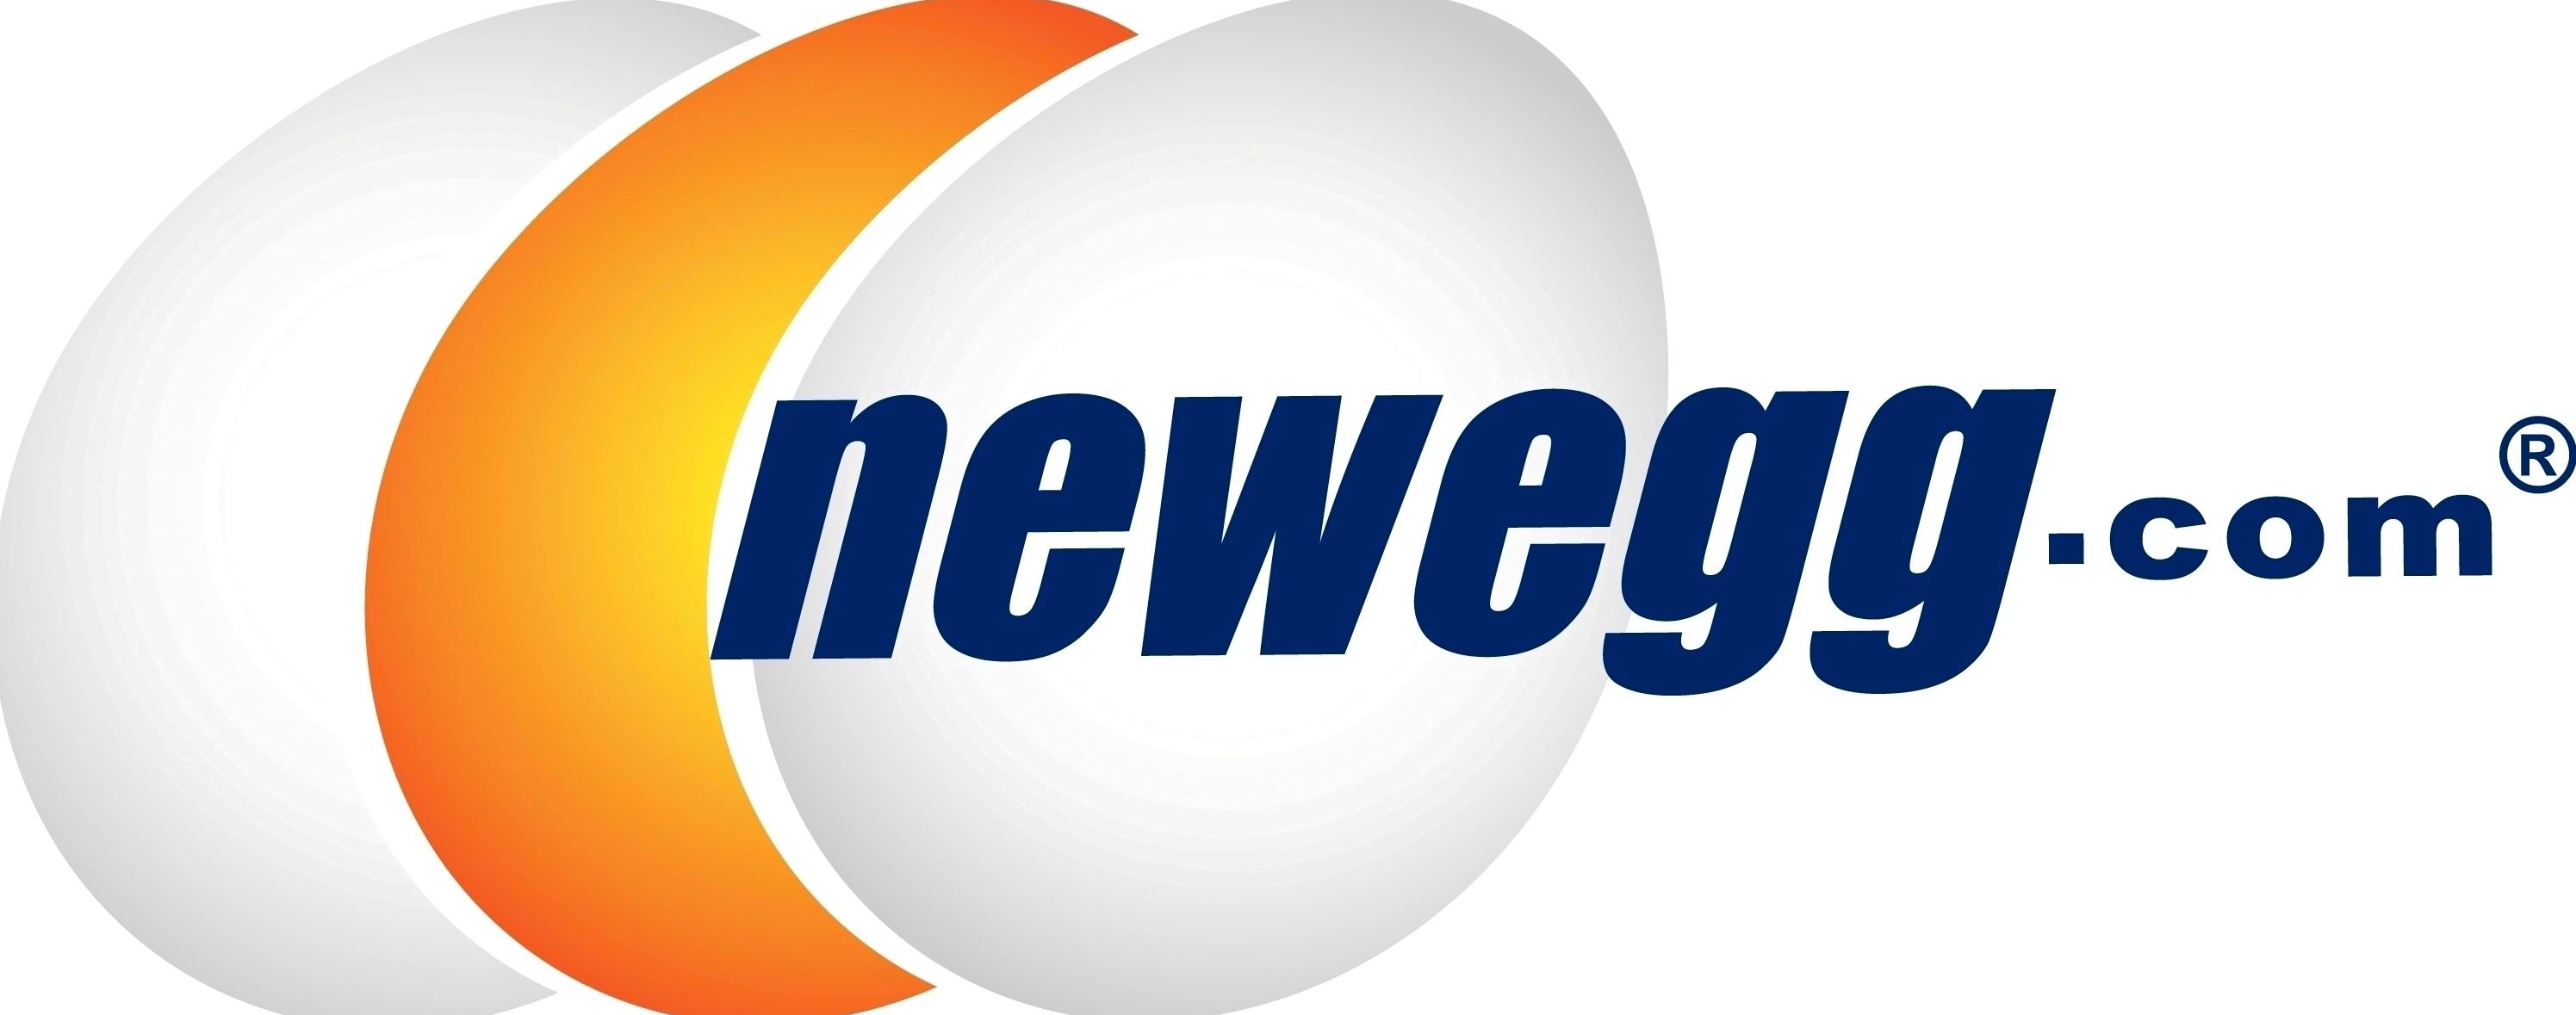 Newegg.com_logo